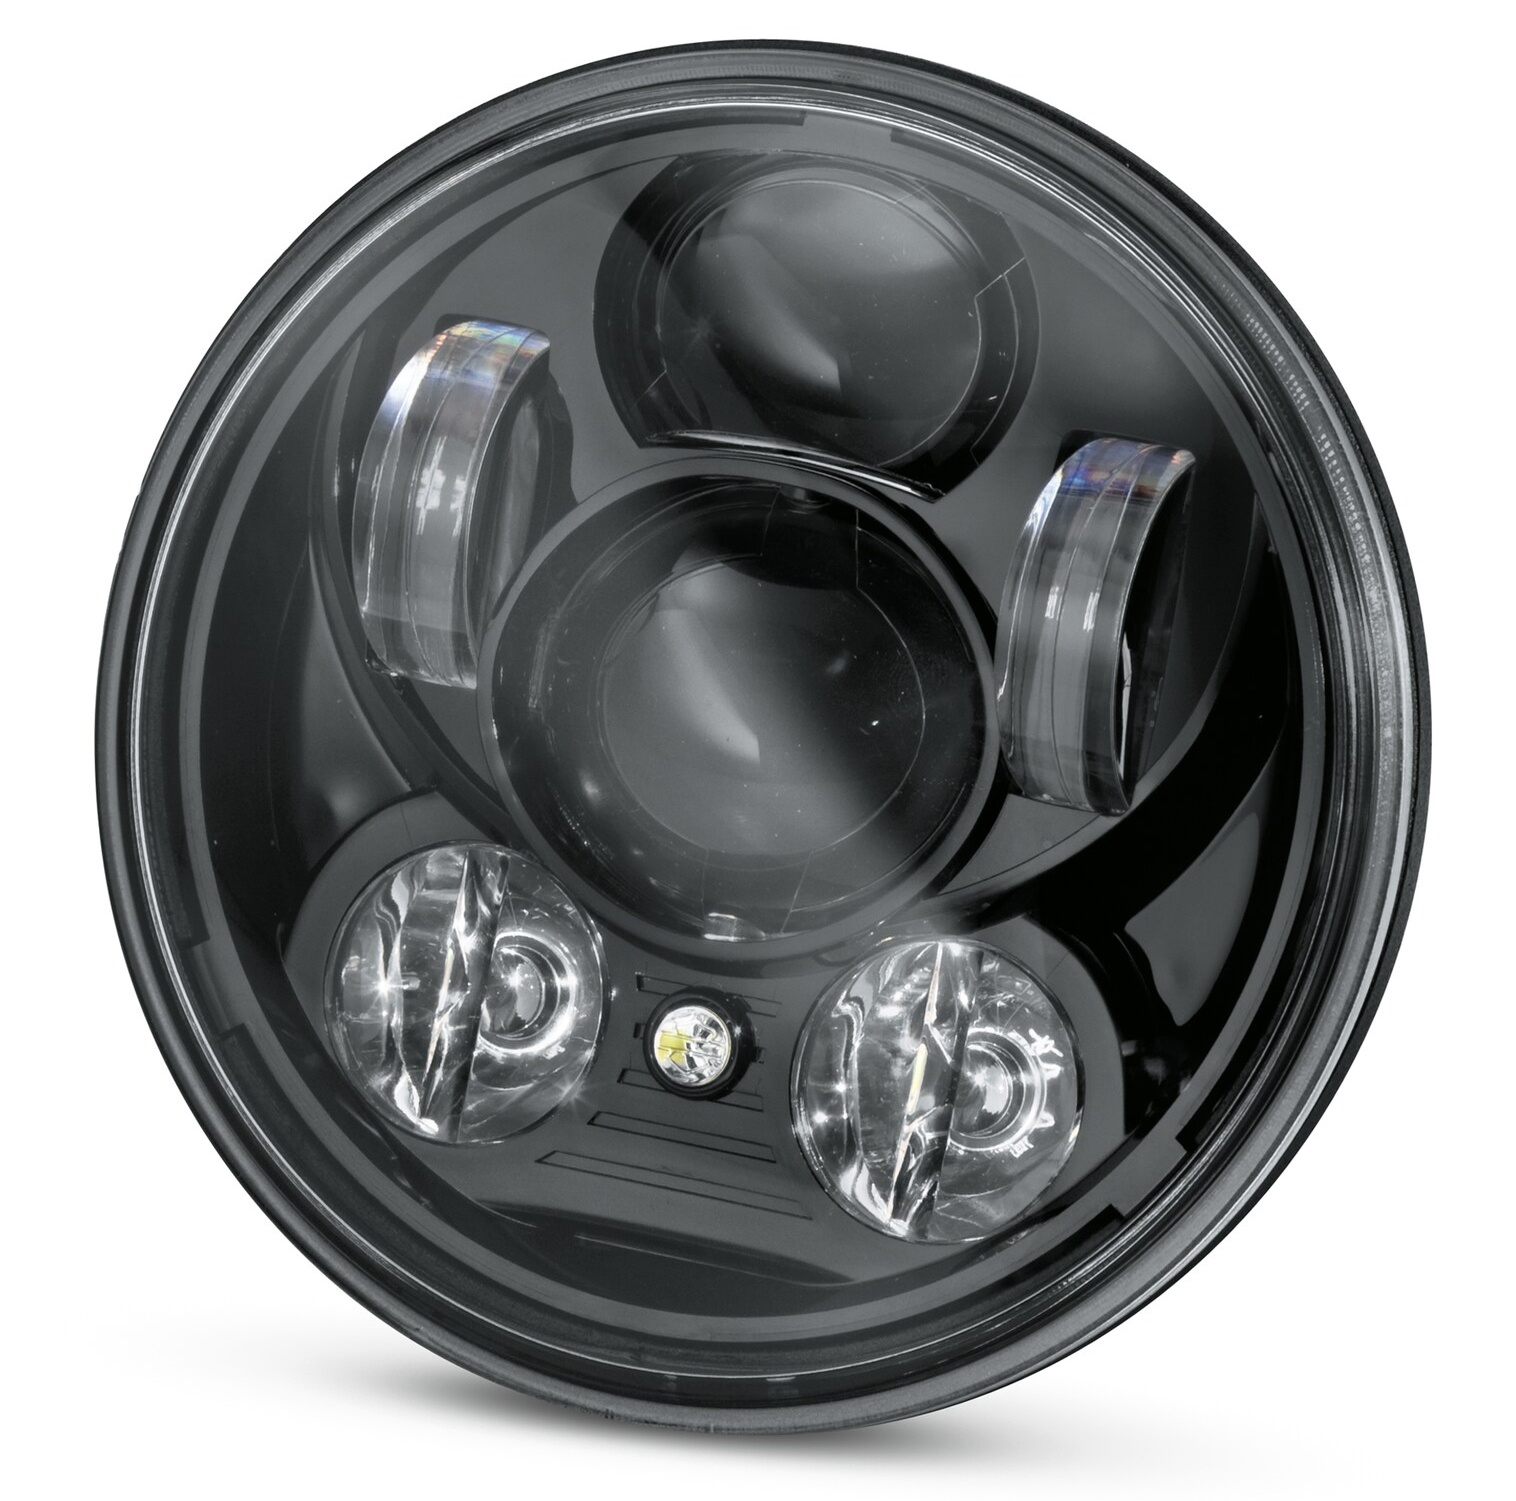 Daymaker Reflector LED-Nebelscheinwerfer – schwarzglänzendes Gehäuse